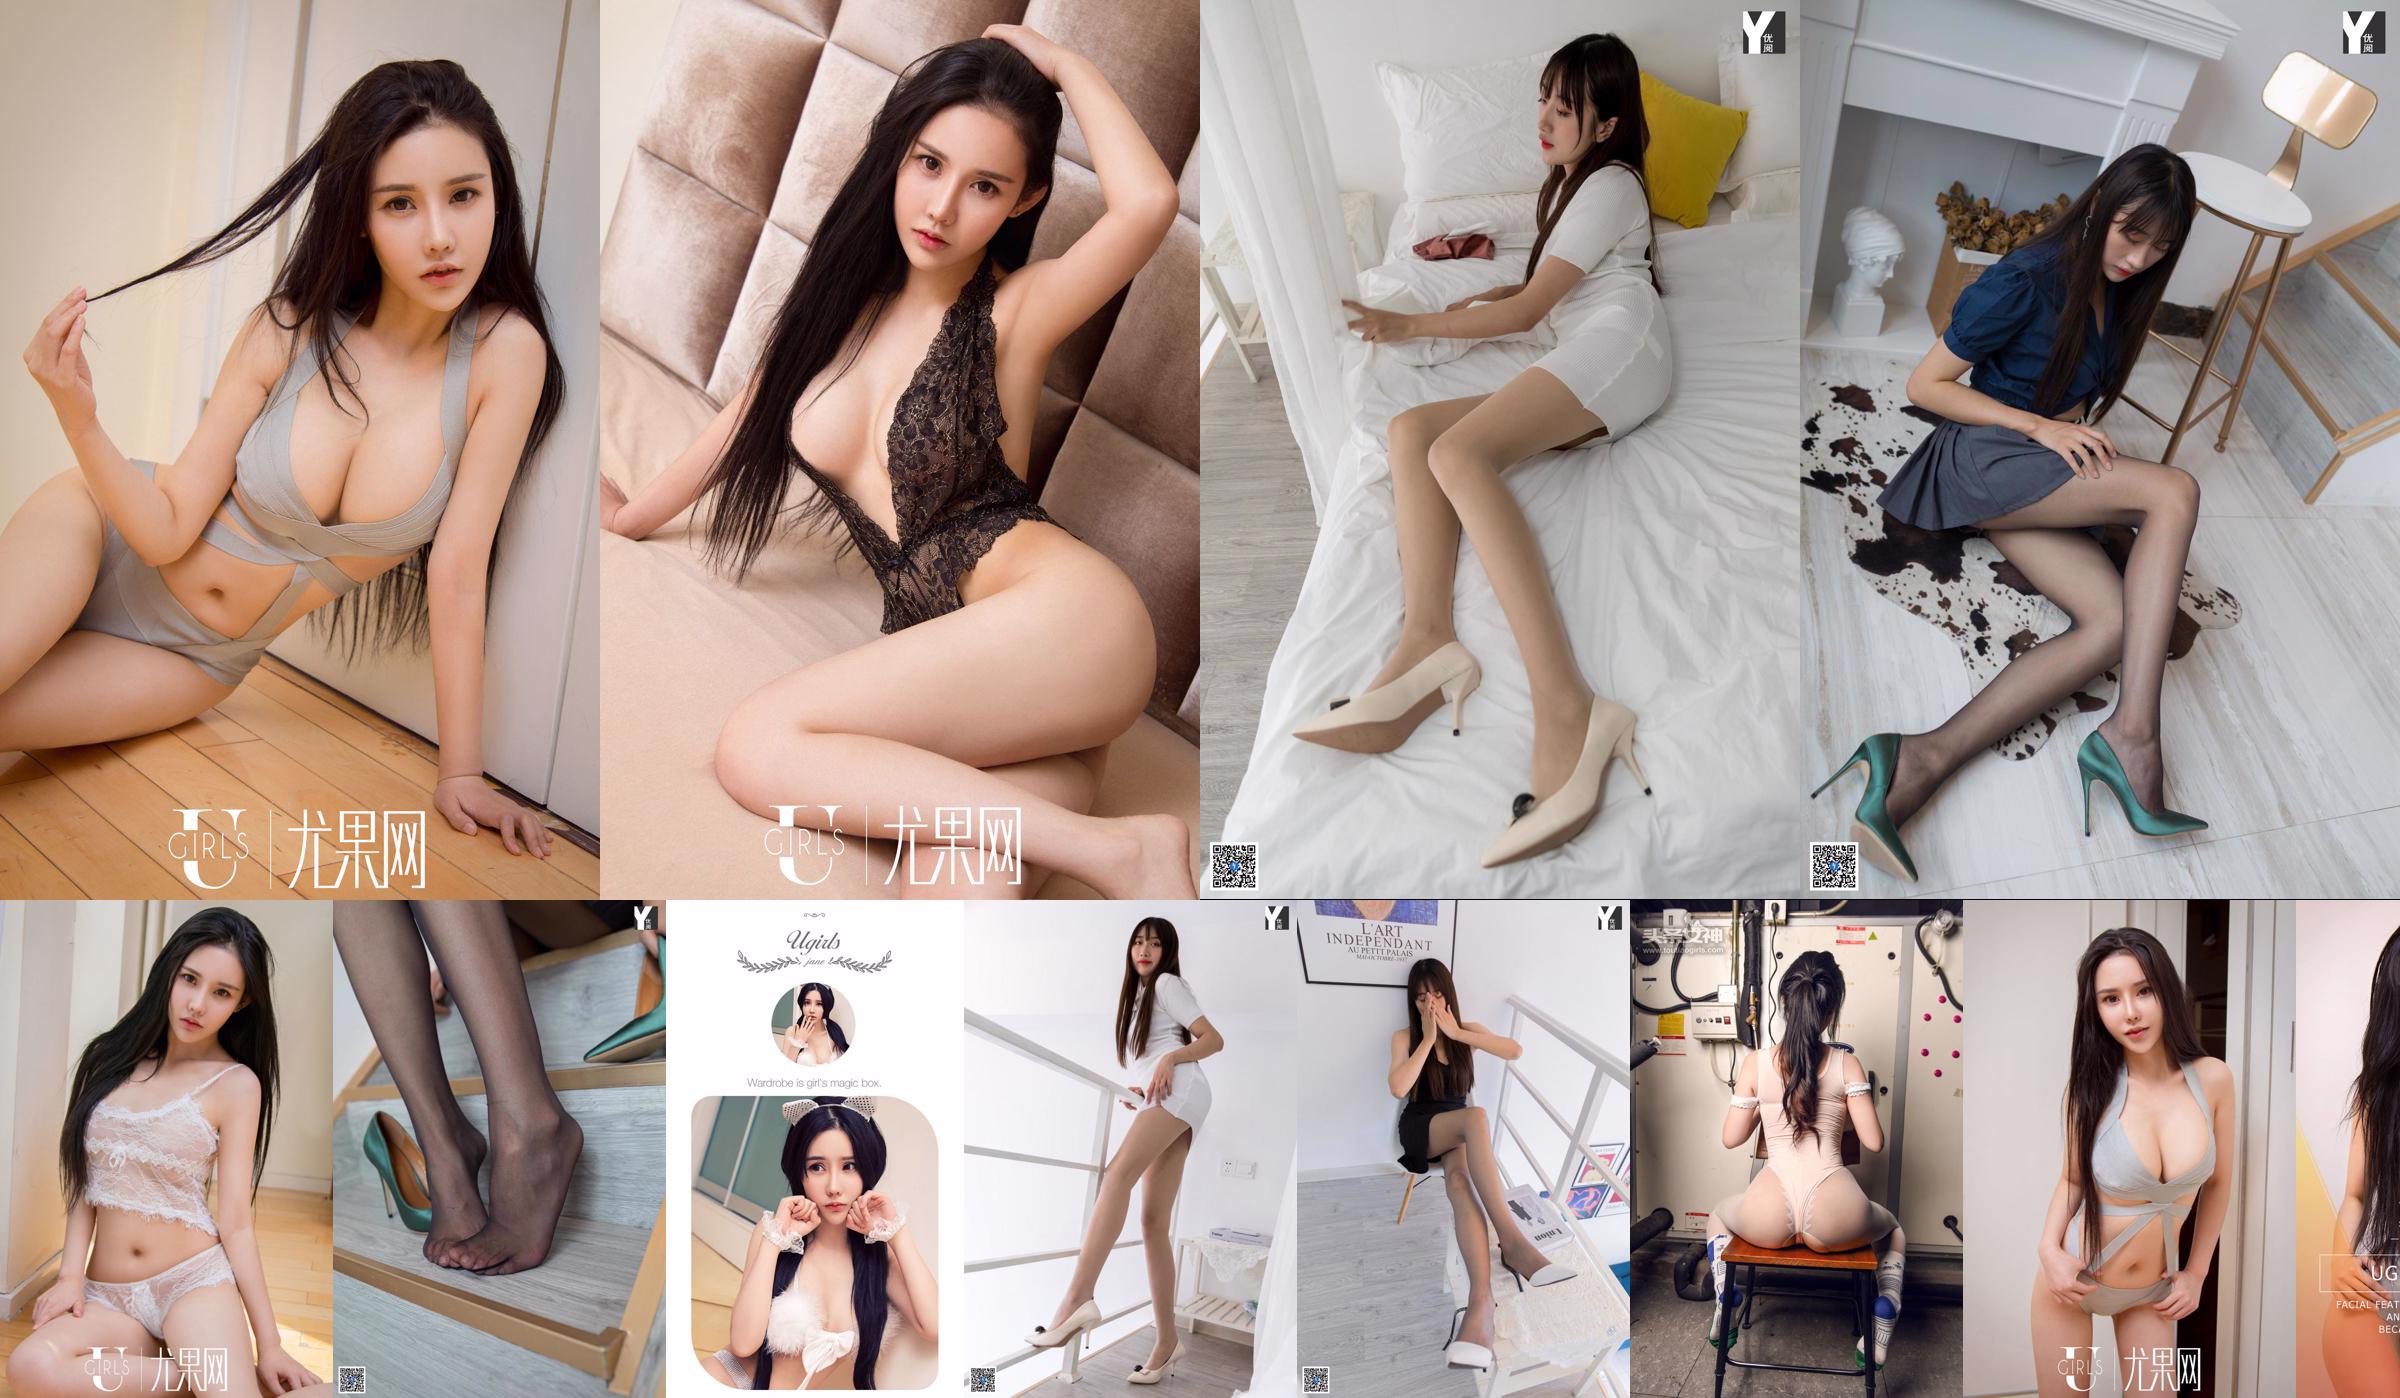 [IESS 异 思 趣向] Người mẫu: Xia Xia "White Softness" Đôi chân xinh đẹp trong đôi tất lụa No.2e2ff6 Trang 2